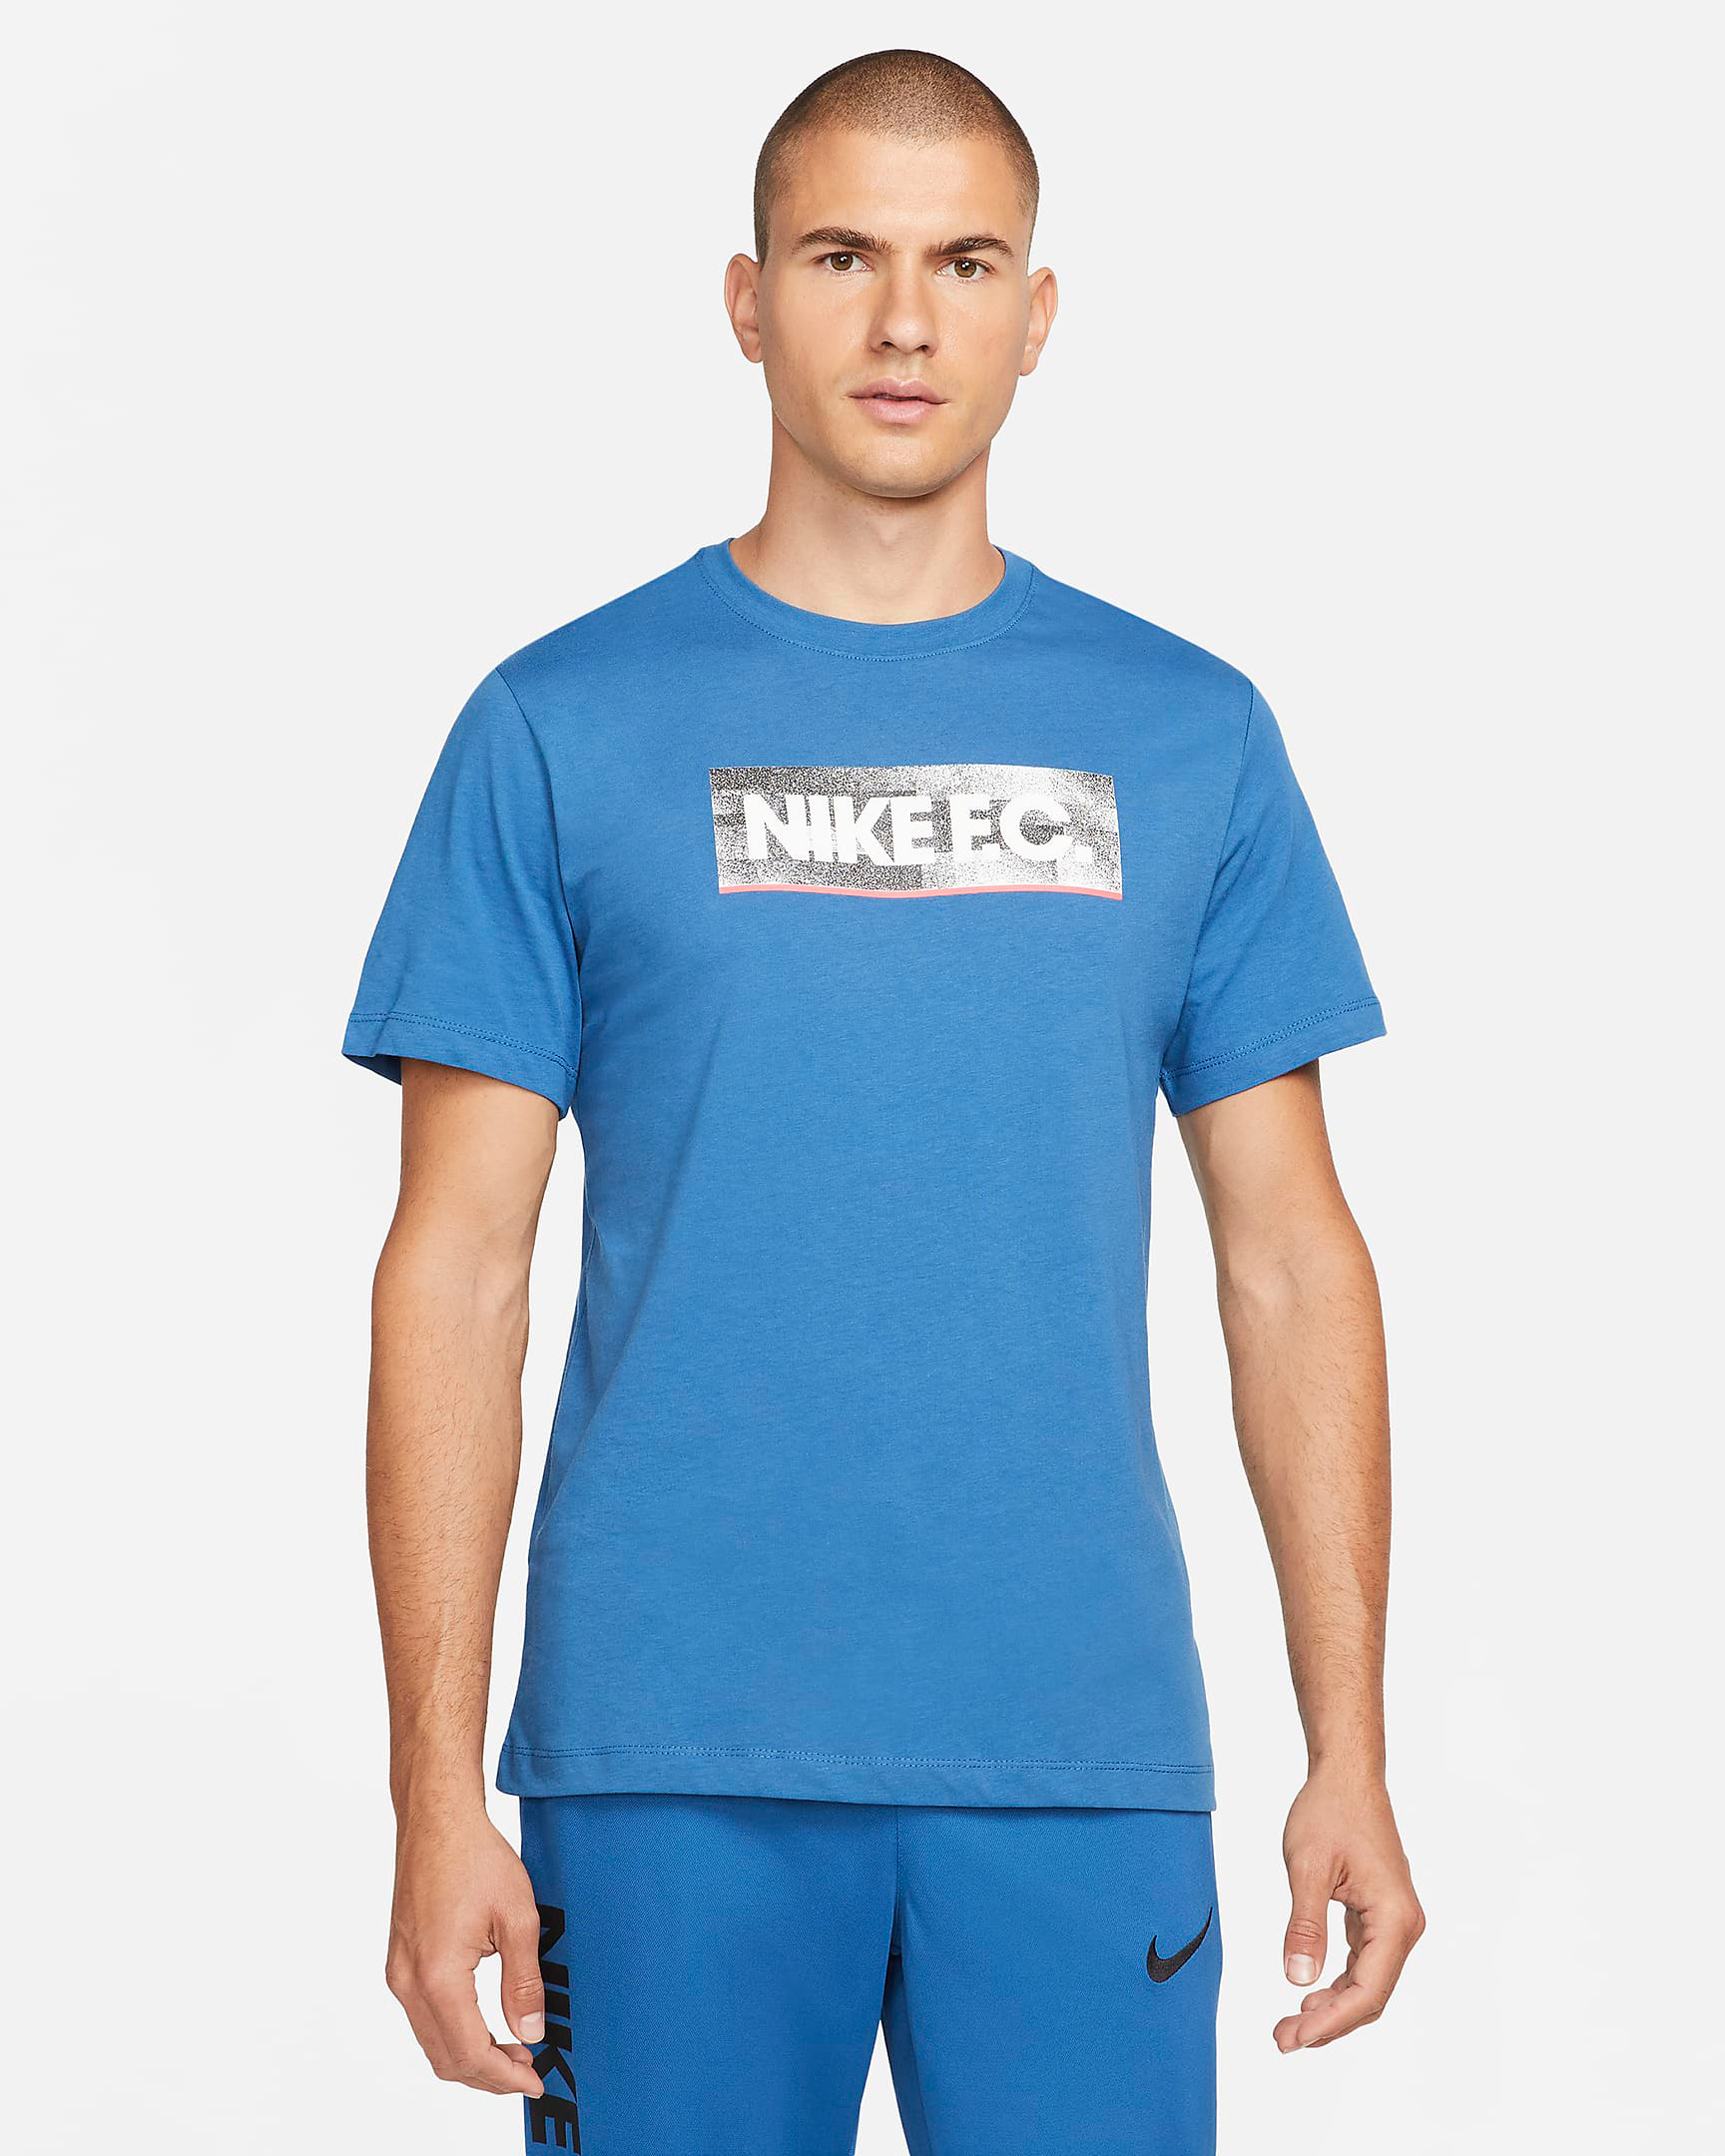 nike-fc-dark-marina-blue-t-shirt-1